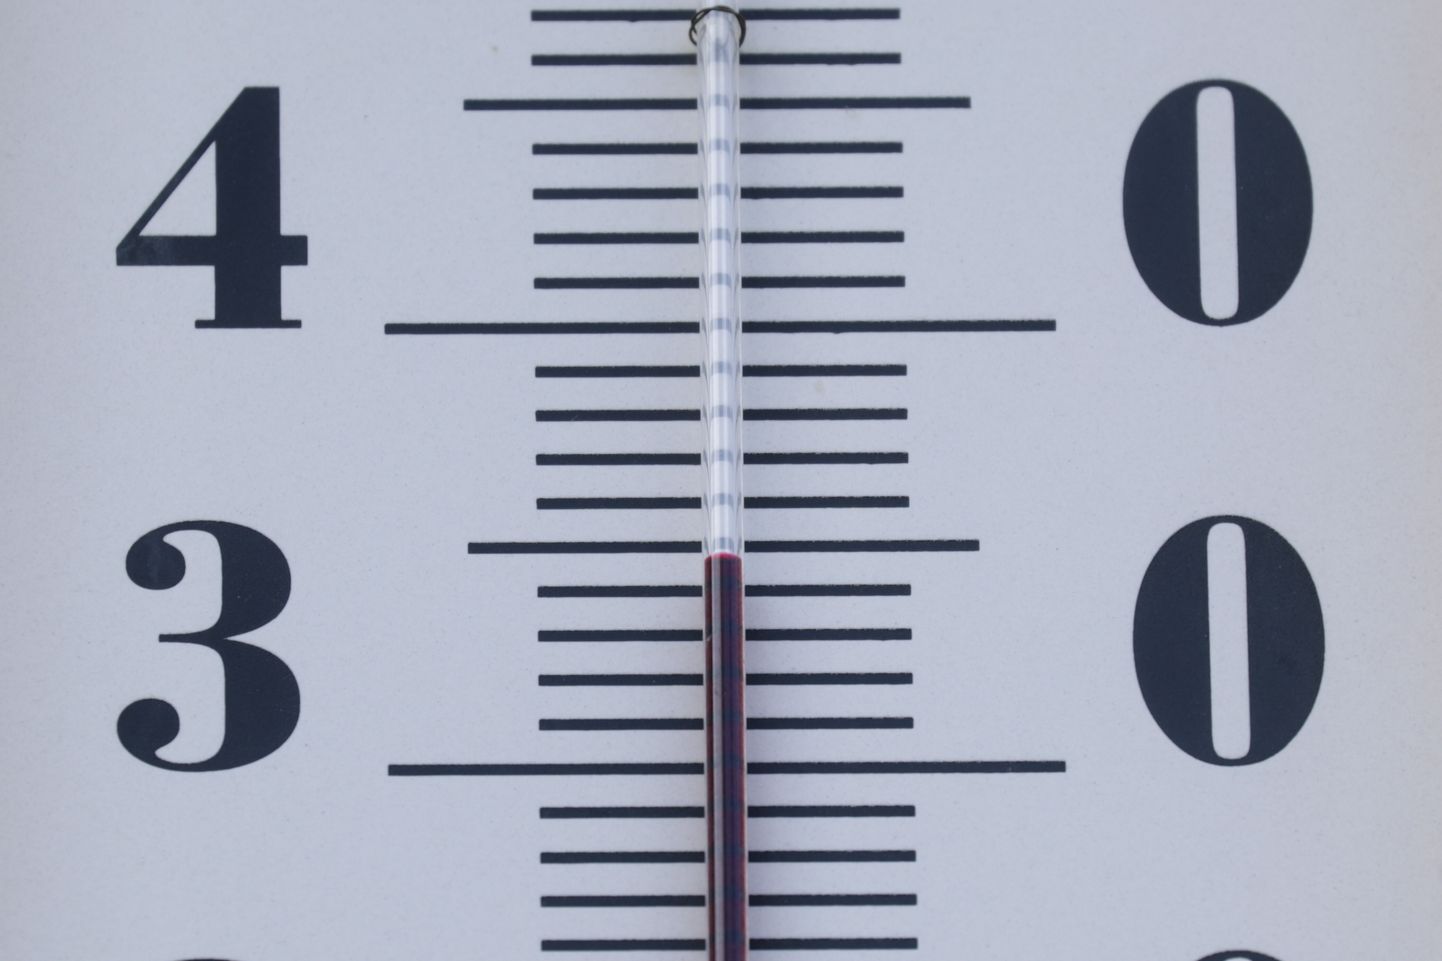 Moskvas tõusis õhutemperatuur 22. juunil 35 kraadini.